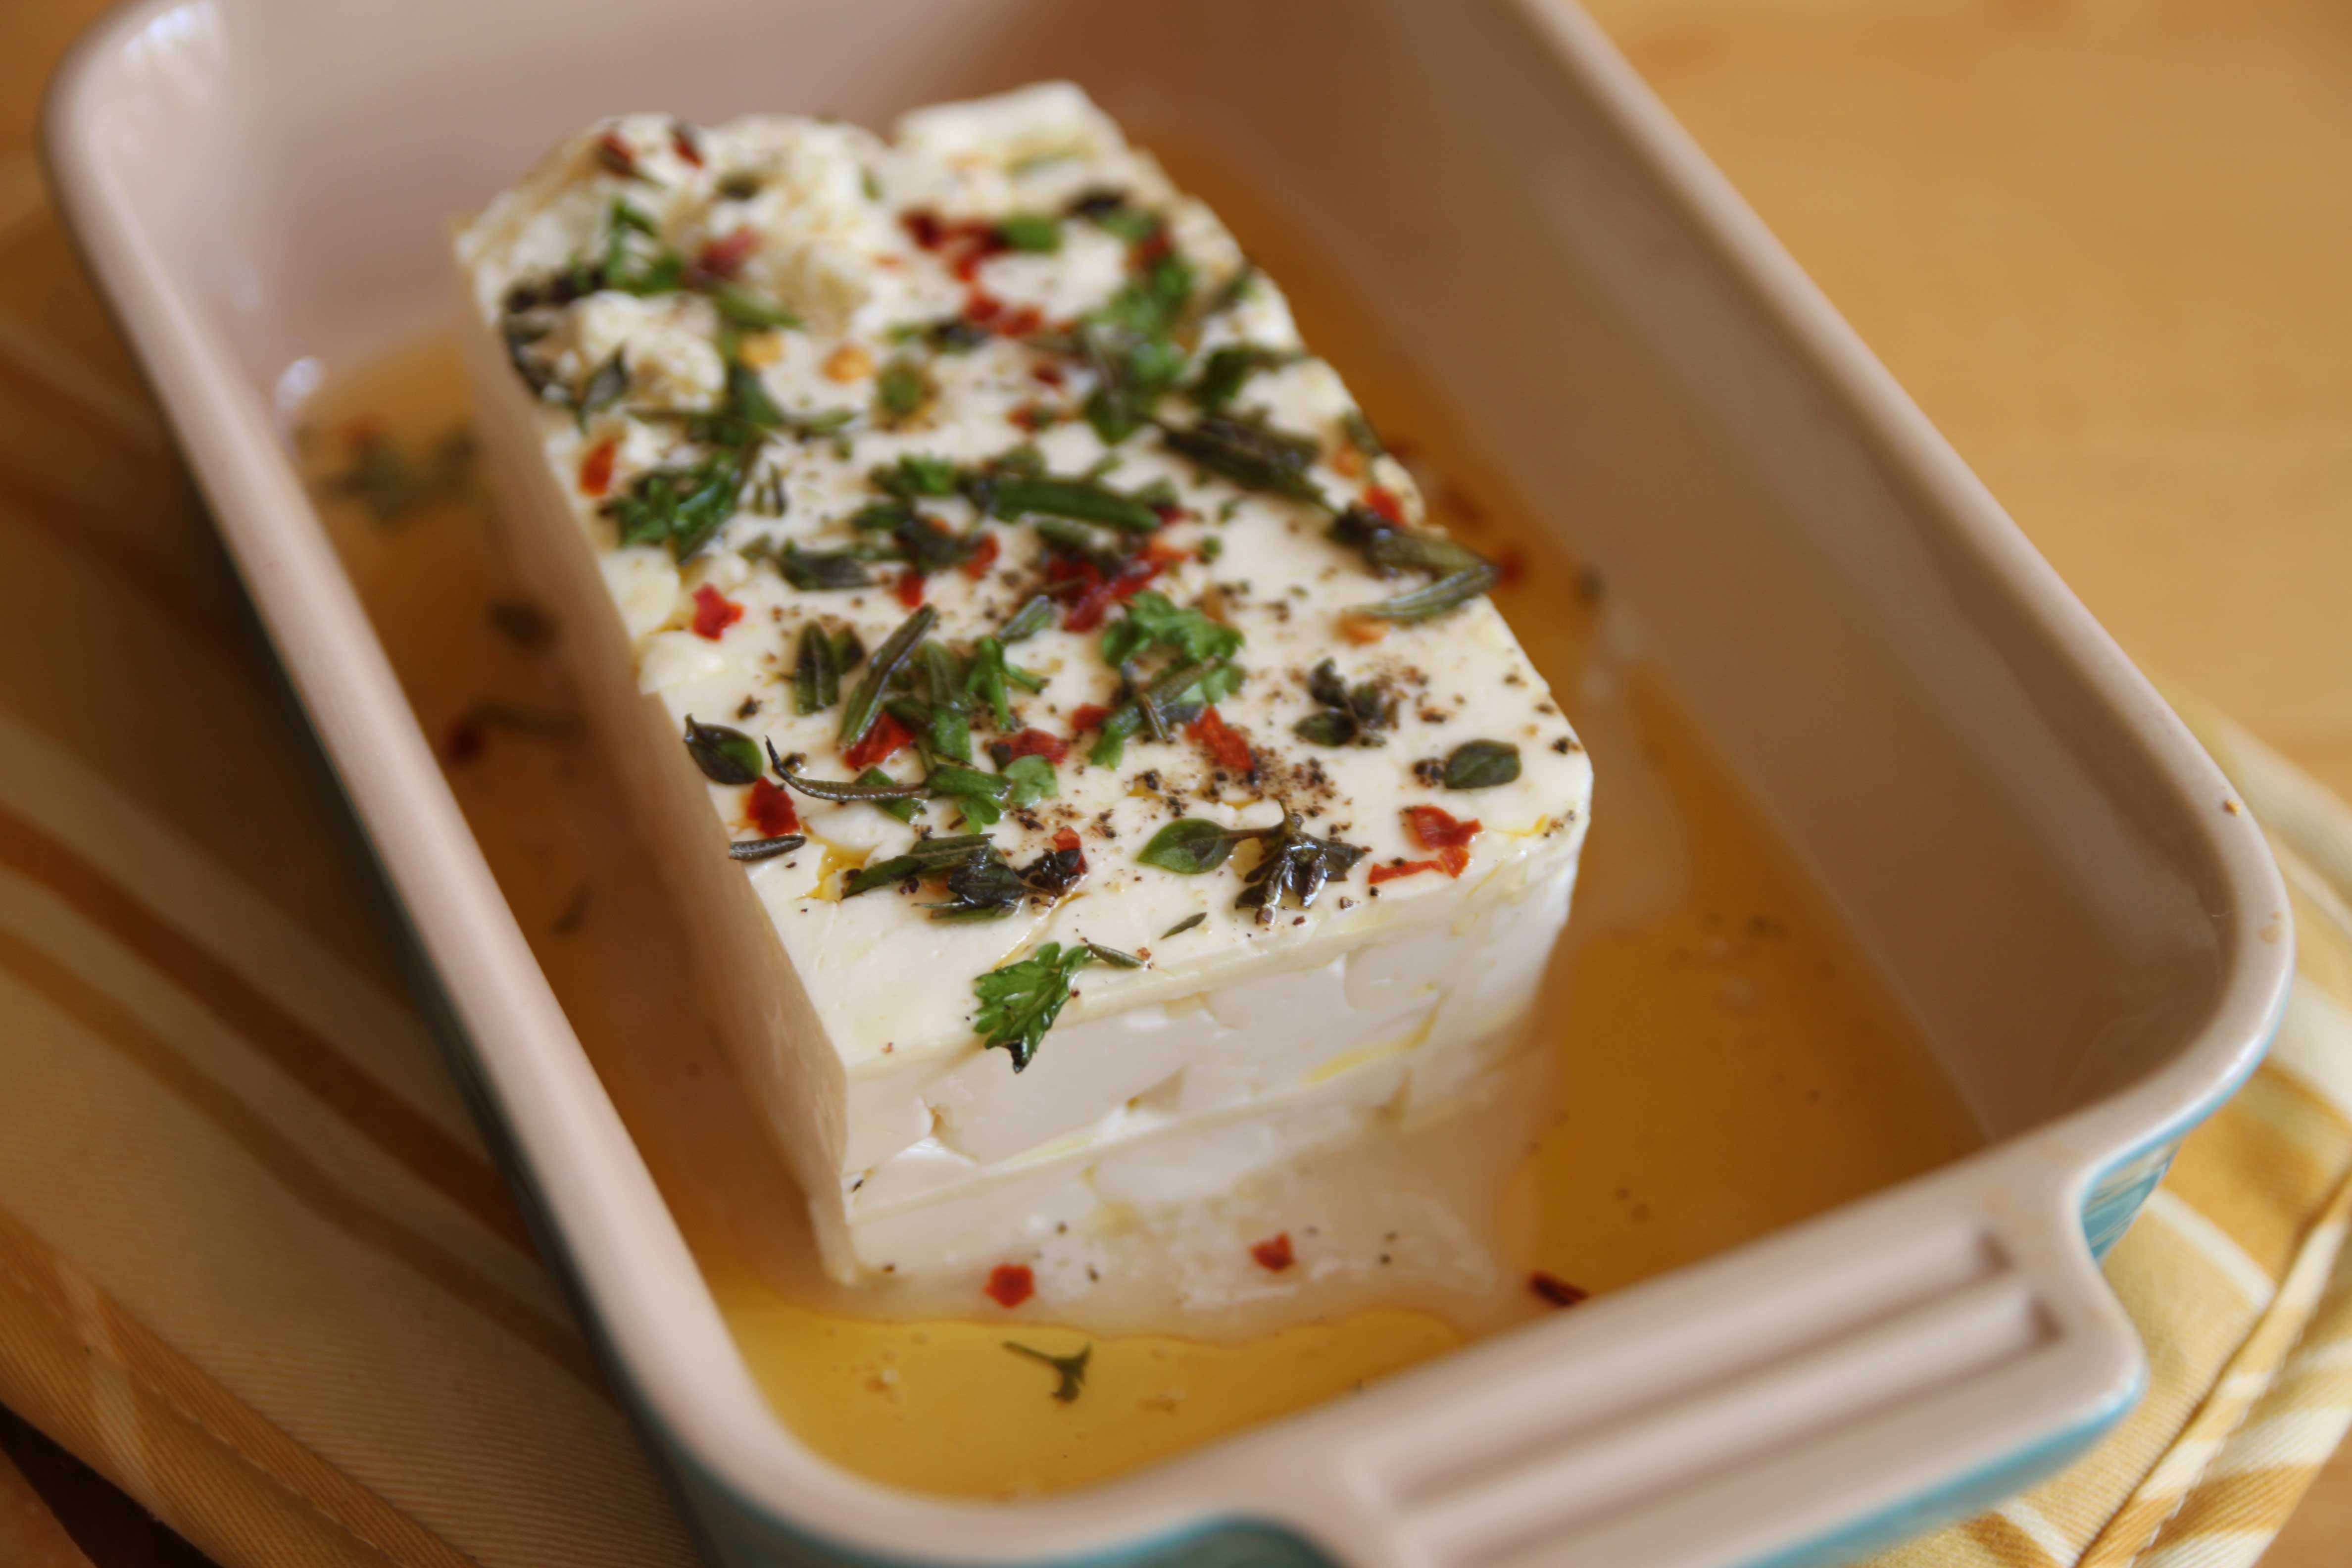 branappetit - peynir son kullanma tarihi